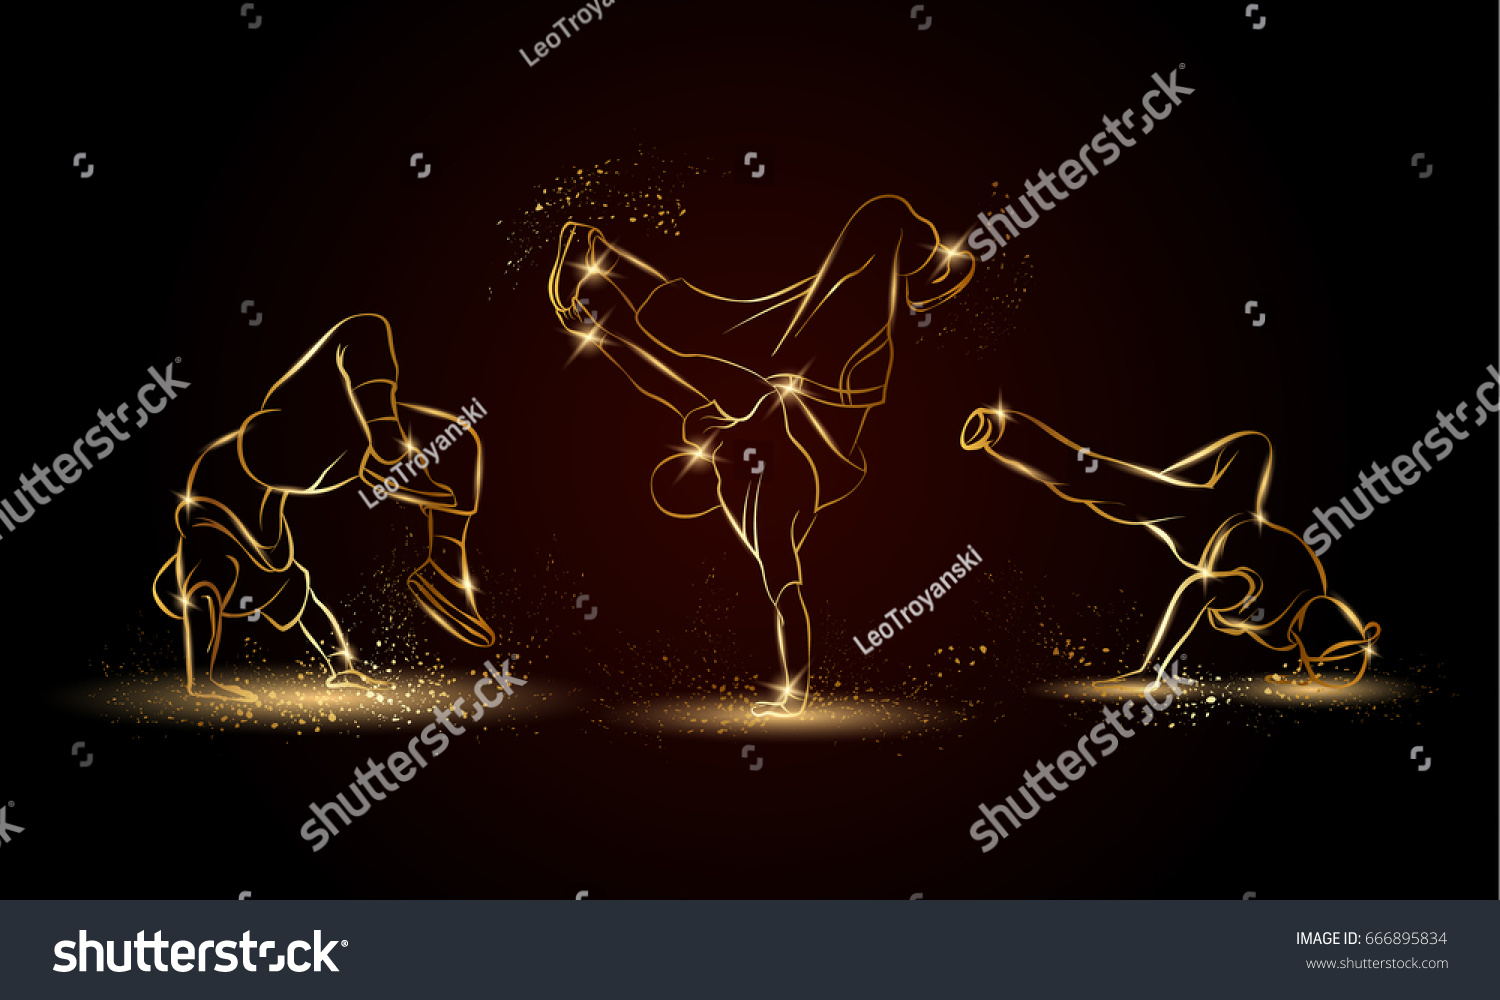 SVG of Golden linear b-boys dancers set on dark background. Hip hop dance background for poster and flyer. svg